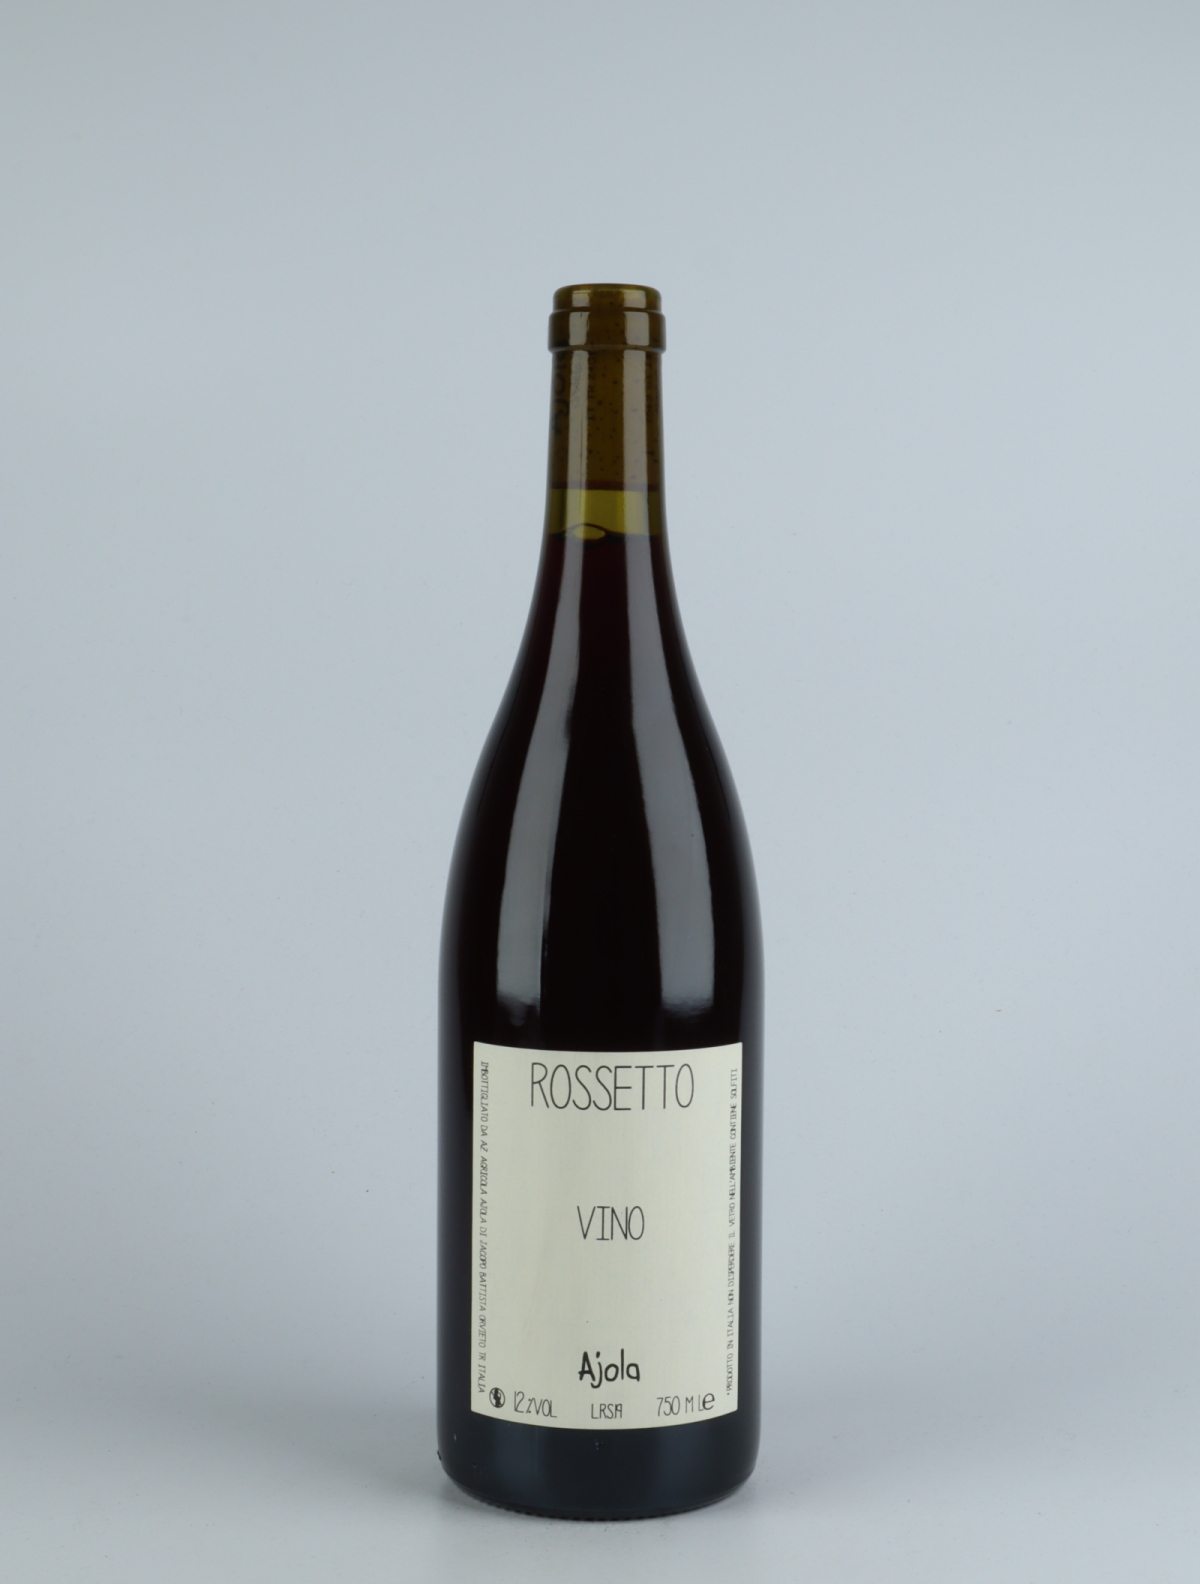 En flaske 2019 Vino Rossetto Rødvin fra Ajola, Umbrien i Italien